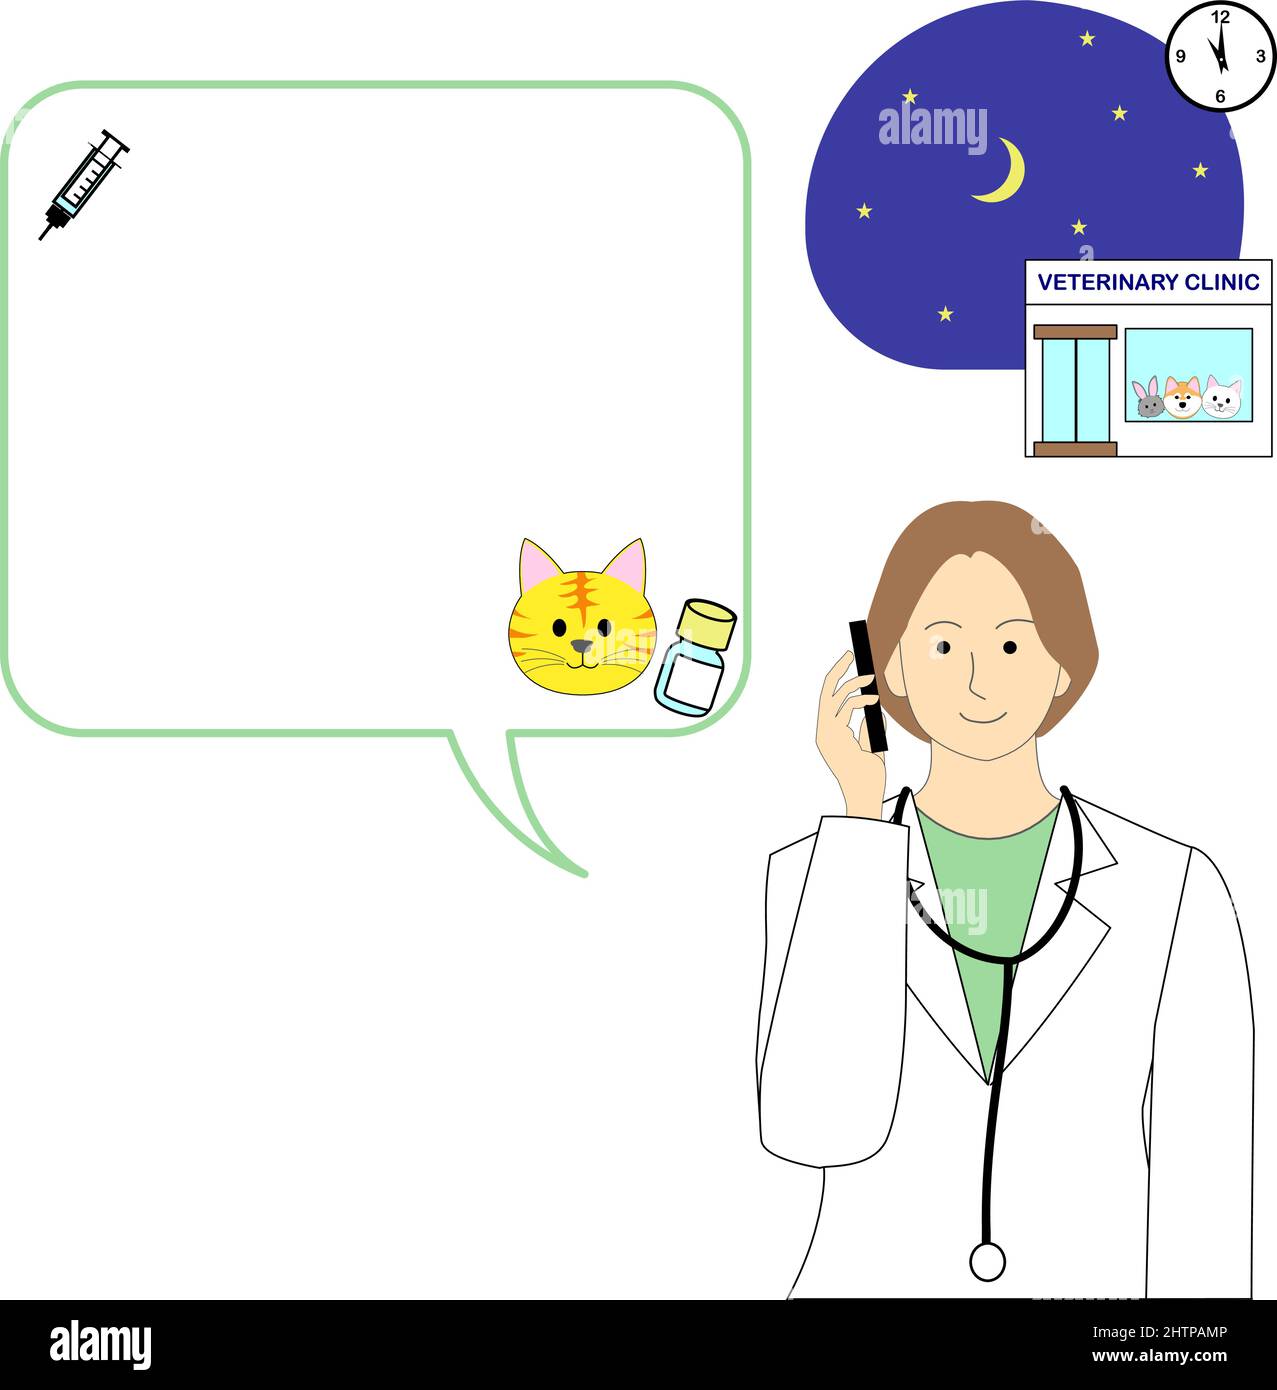 Scena notturna della clinica veterinaria con un fumetto vocale e una donna veterinaria su un cellulare Illustrazione Vettoriale